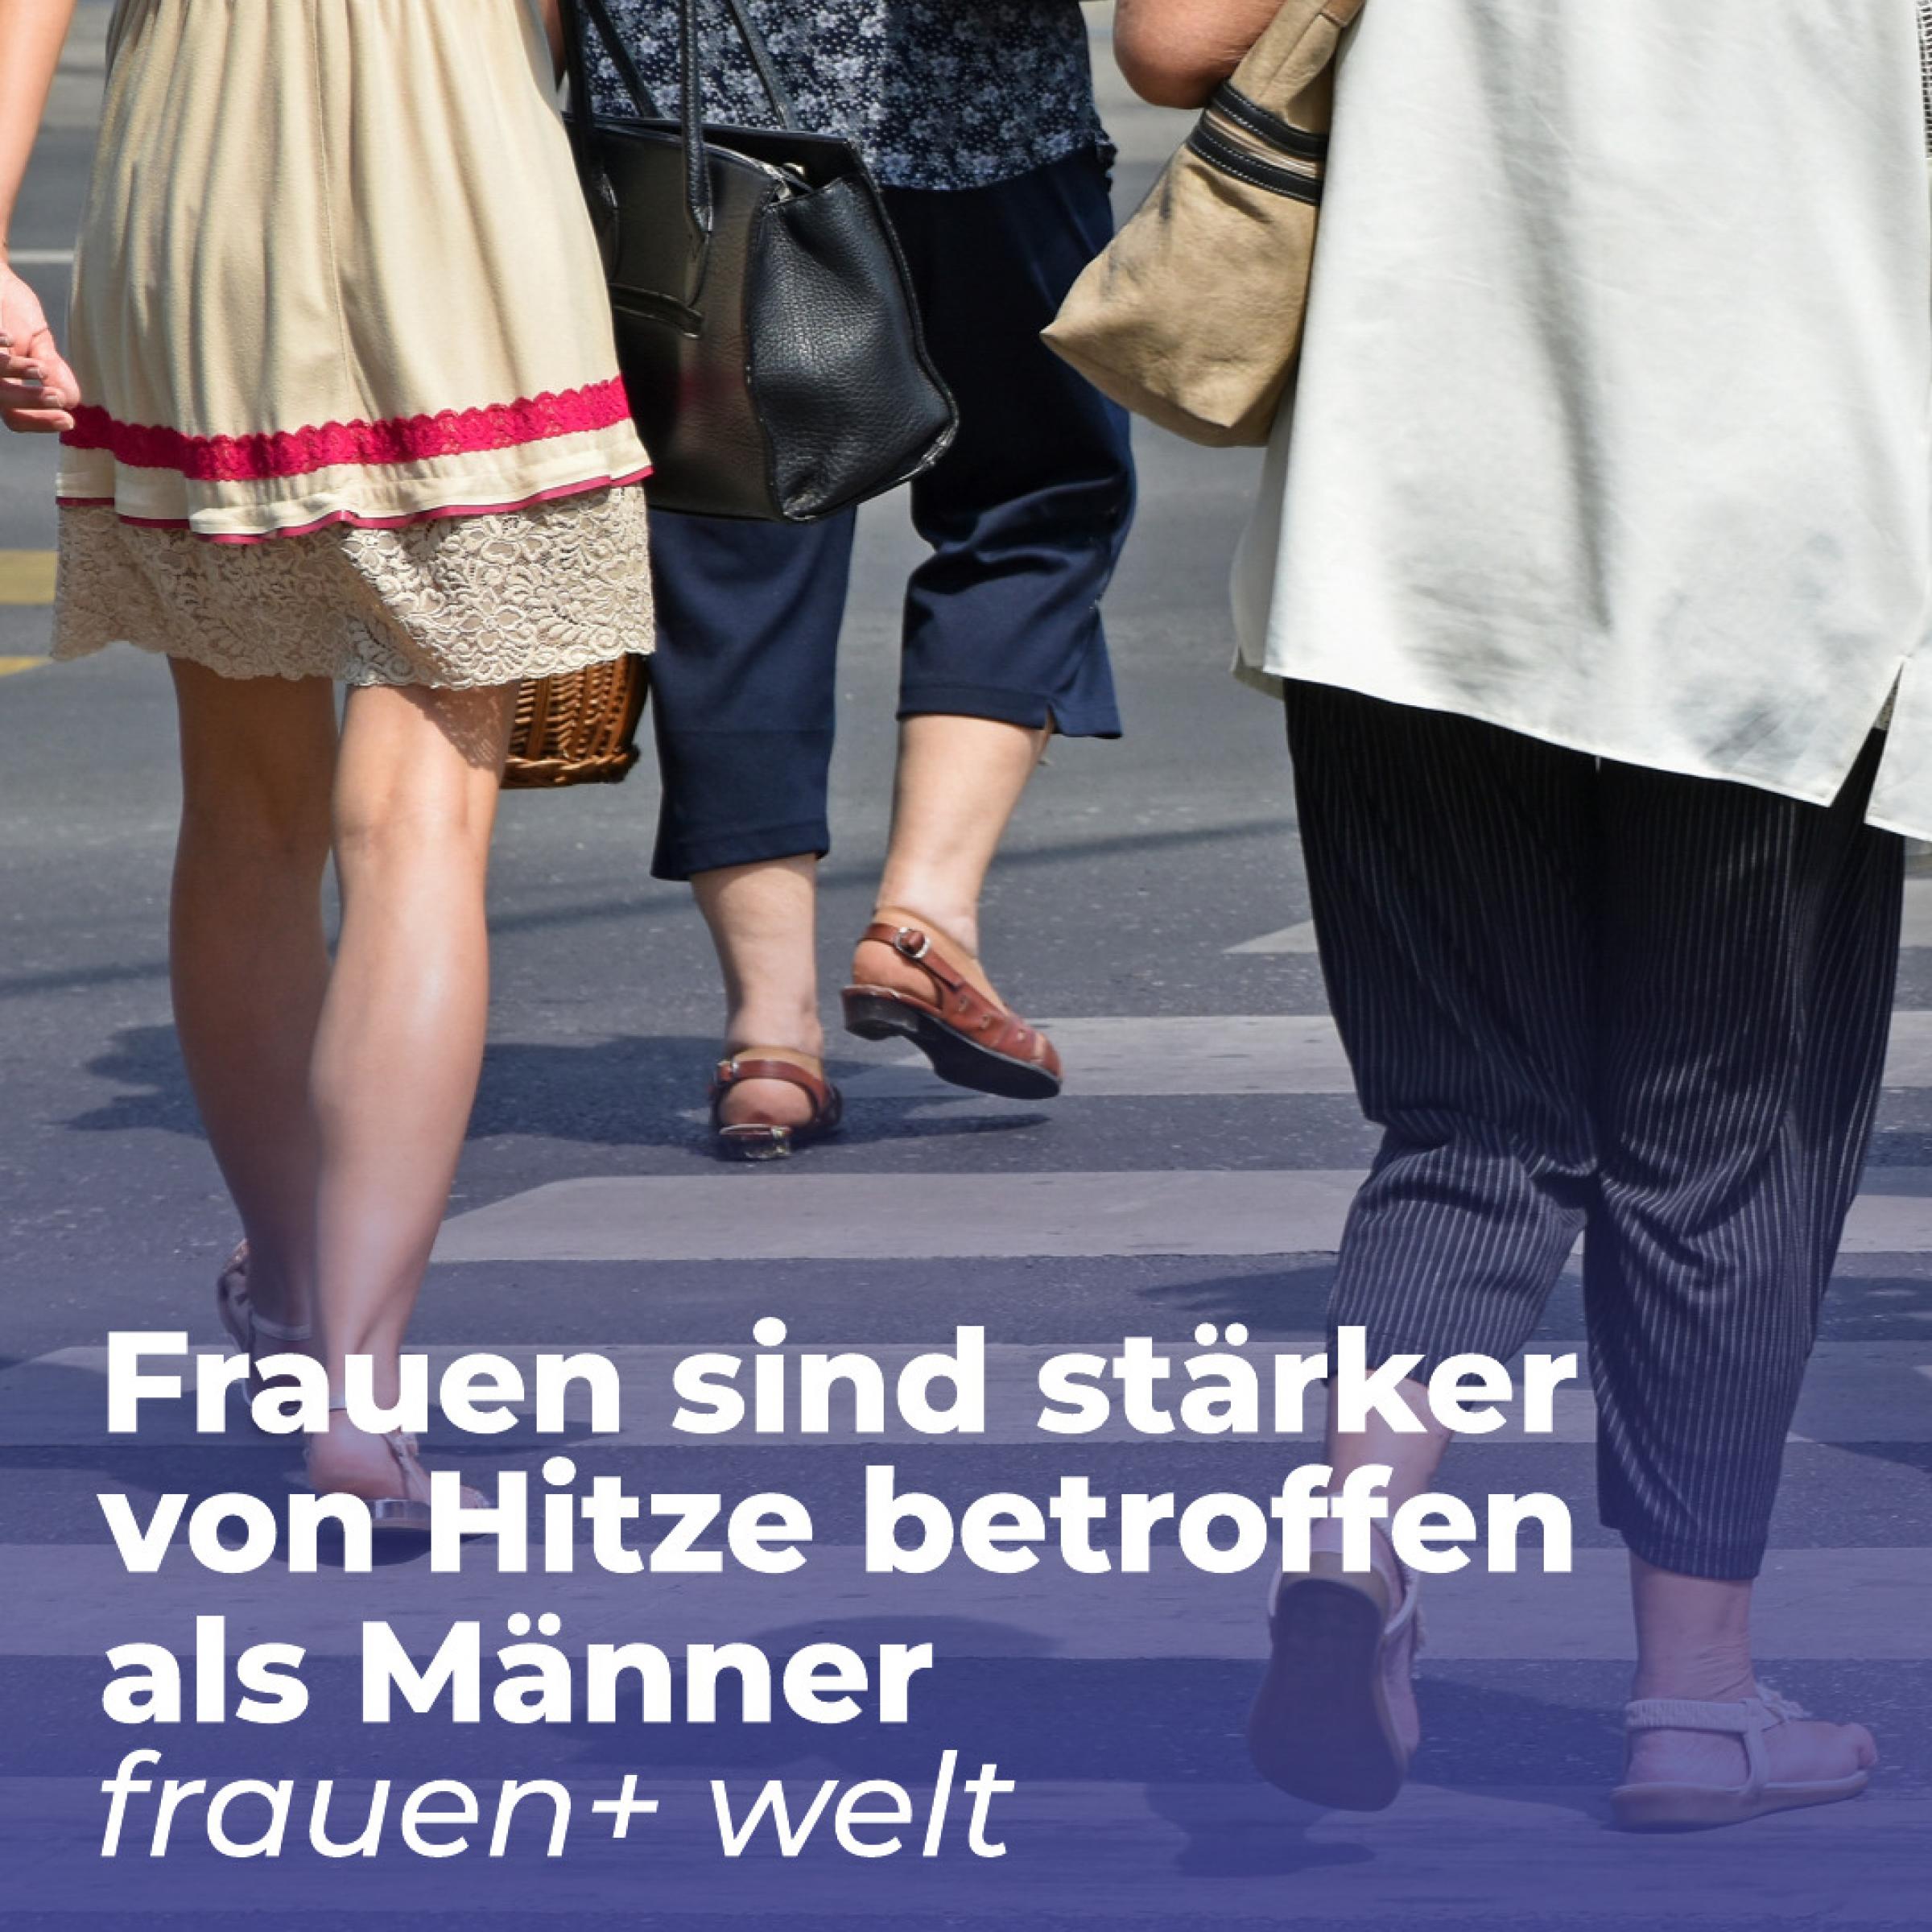 Alte Frau und jüngere Frauen überqueren Straße im Sommer bei Hitze; Text davor: Frauen + Welt, Frauen sind stärker von Hitze betroffen as Männer